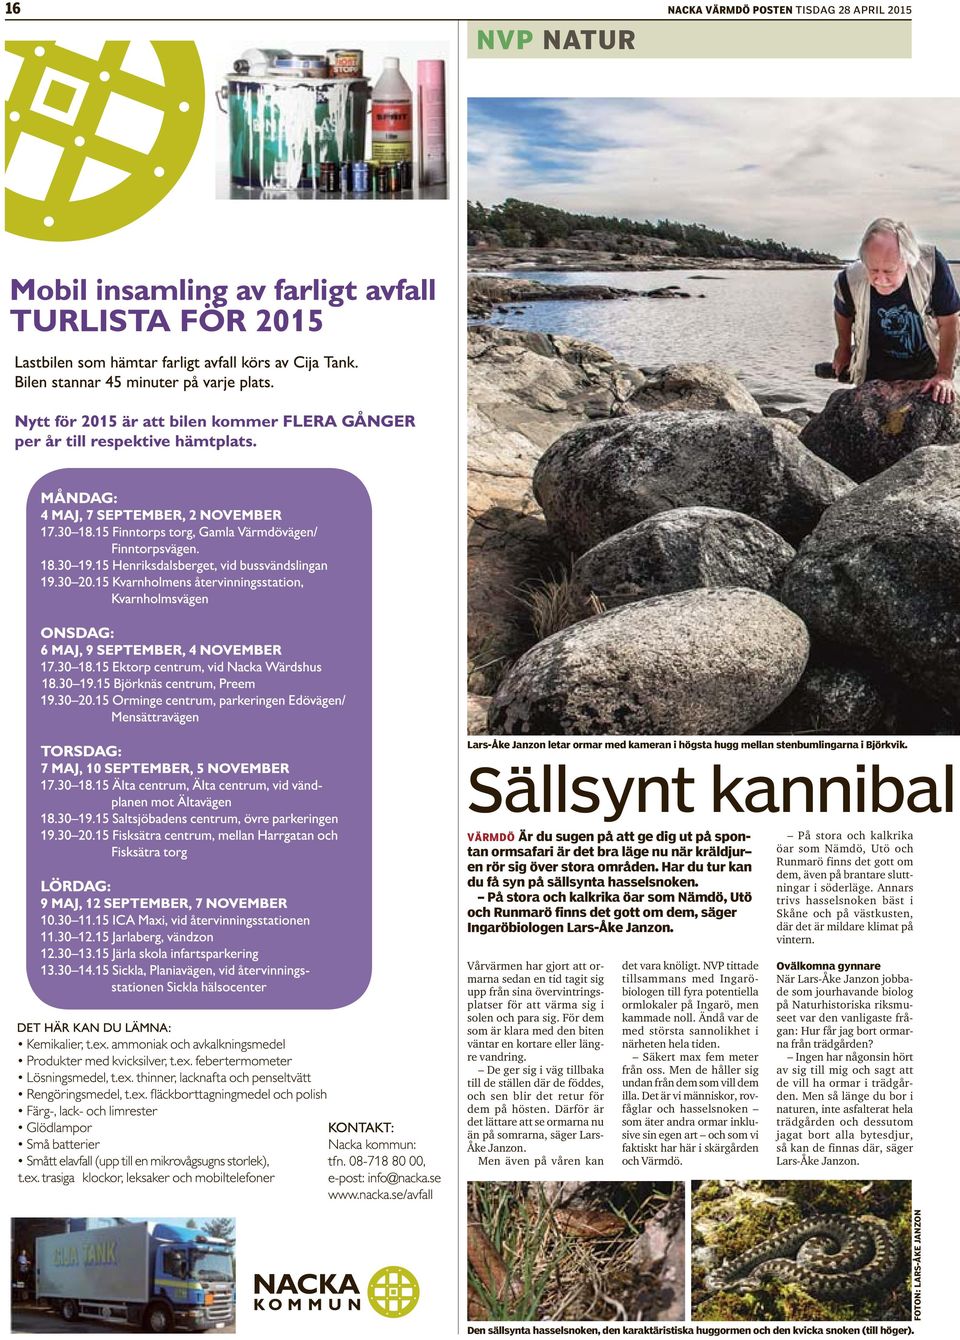 På stora och kalkrika öar som Nämdö, Utö och Runmarö finns det gott om dem, säger Ingaröbiologen Lars-Åke Janzon.